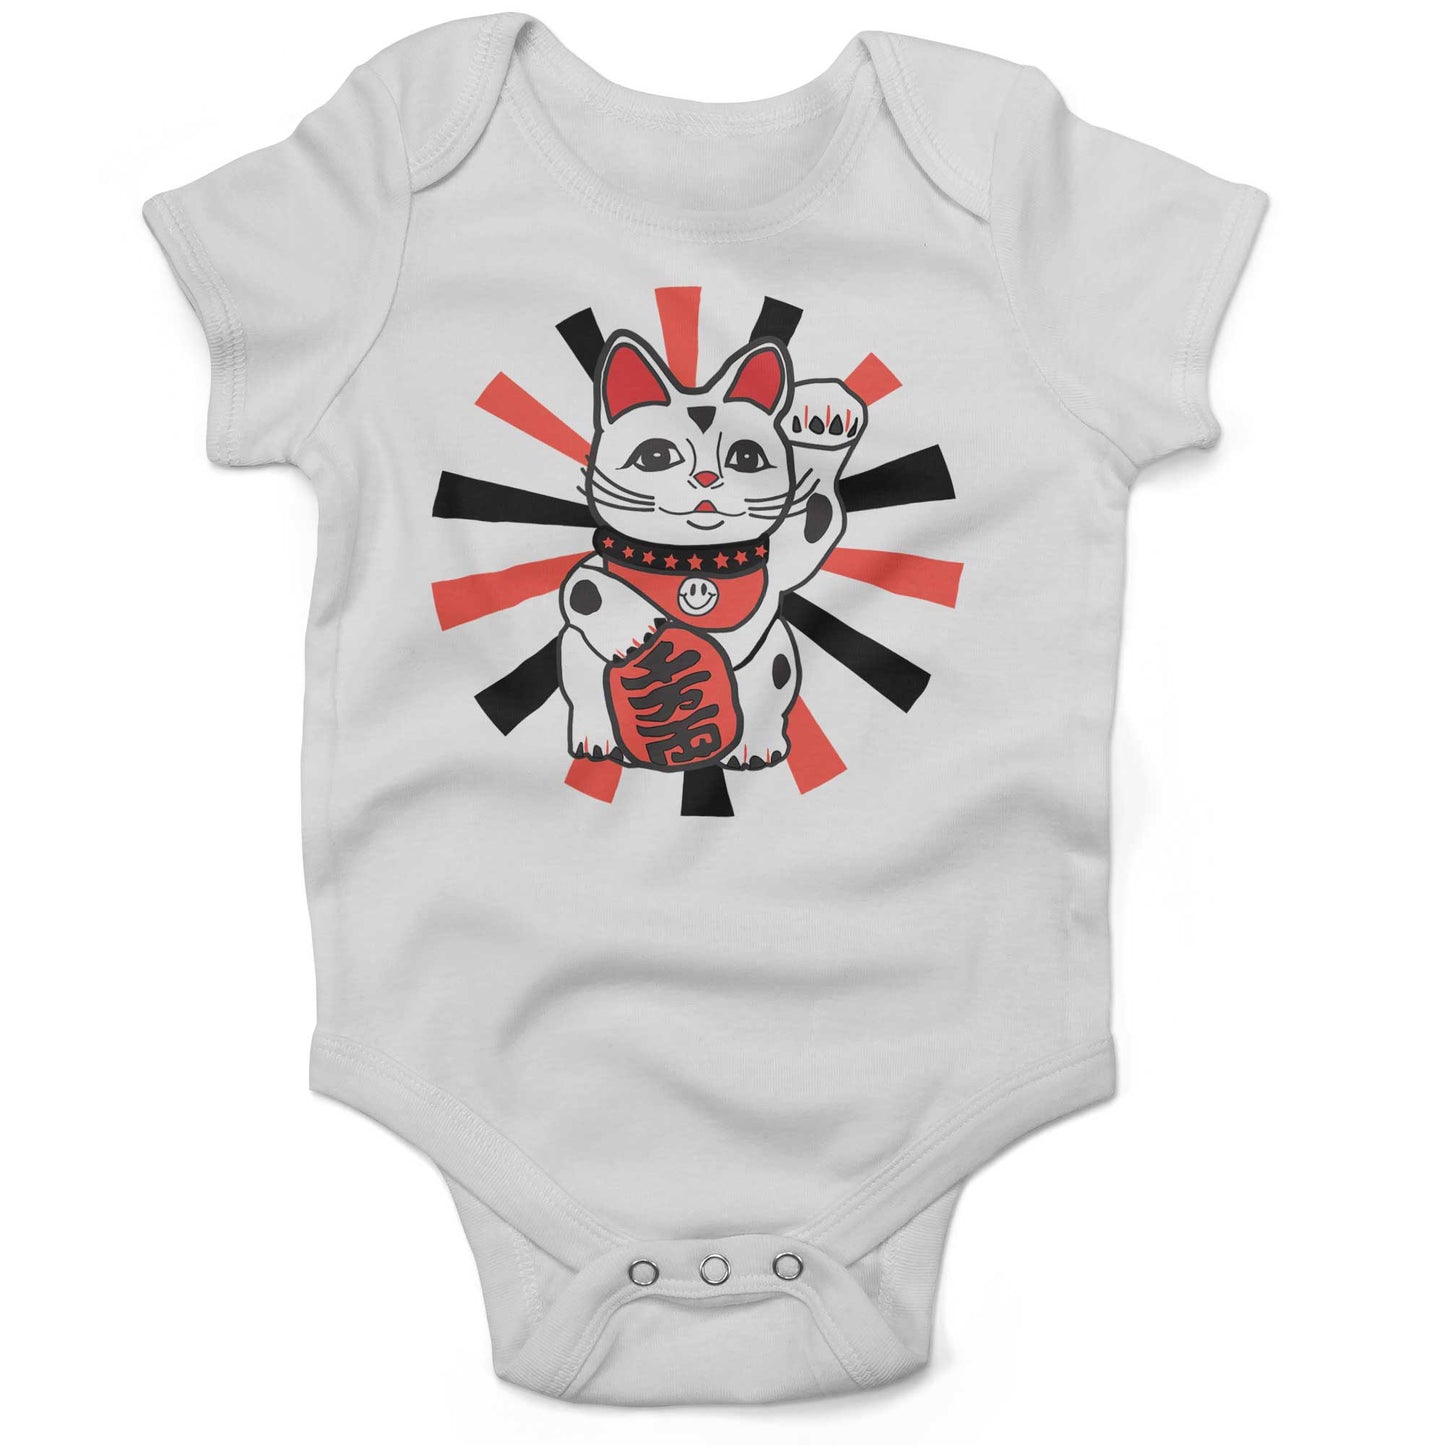 Japanese Lucky Cat Infant Bodysuit or Raglan Tee-White-3-6 months